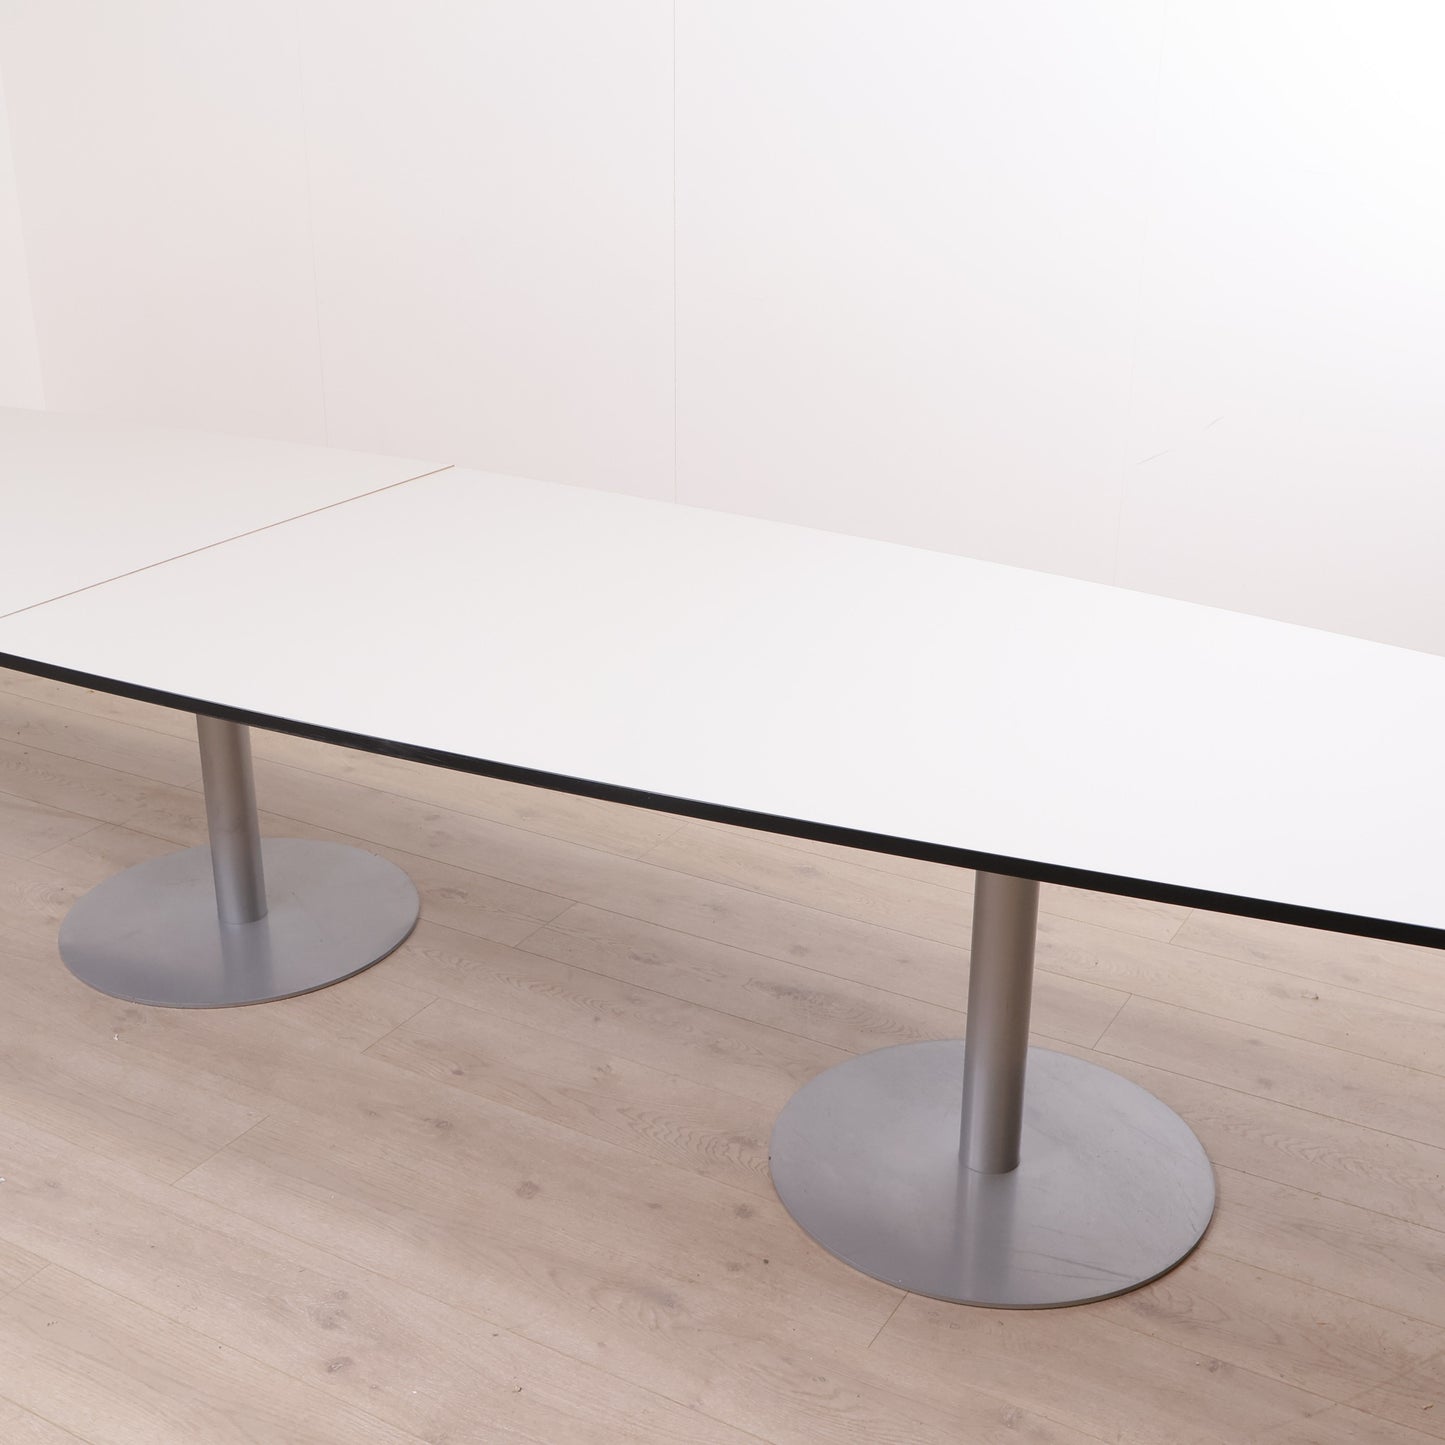 Hvitt møtebord med sort kant, 480 x 120 cm